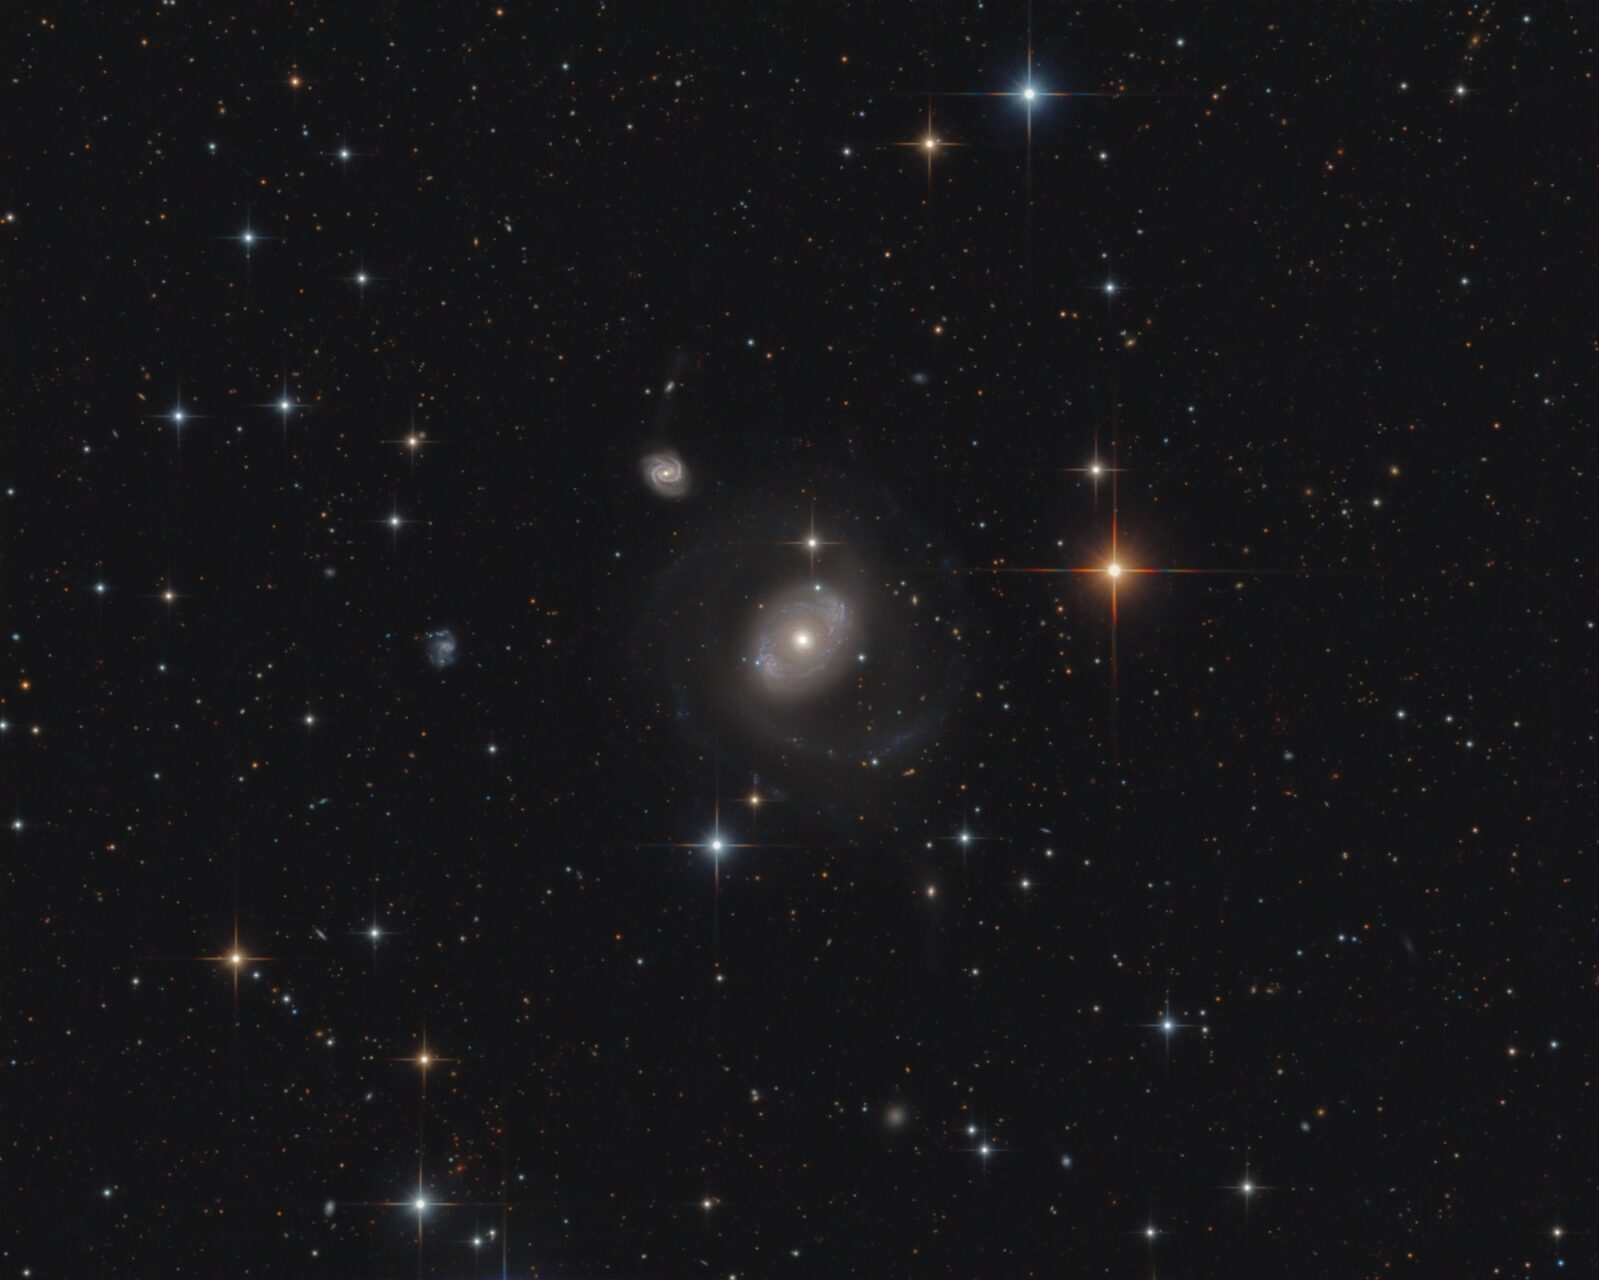 NGC 4151